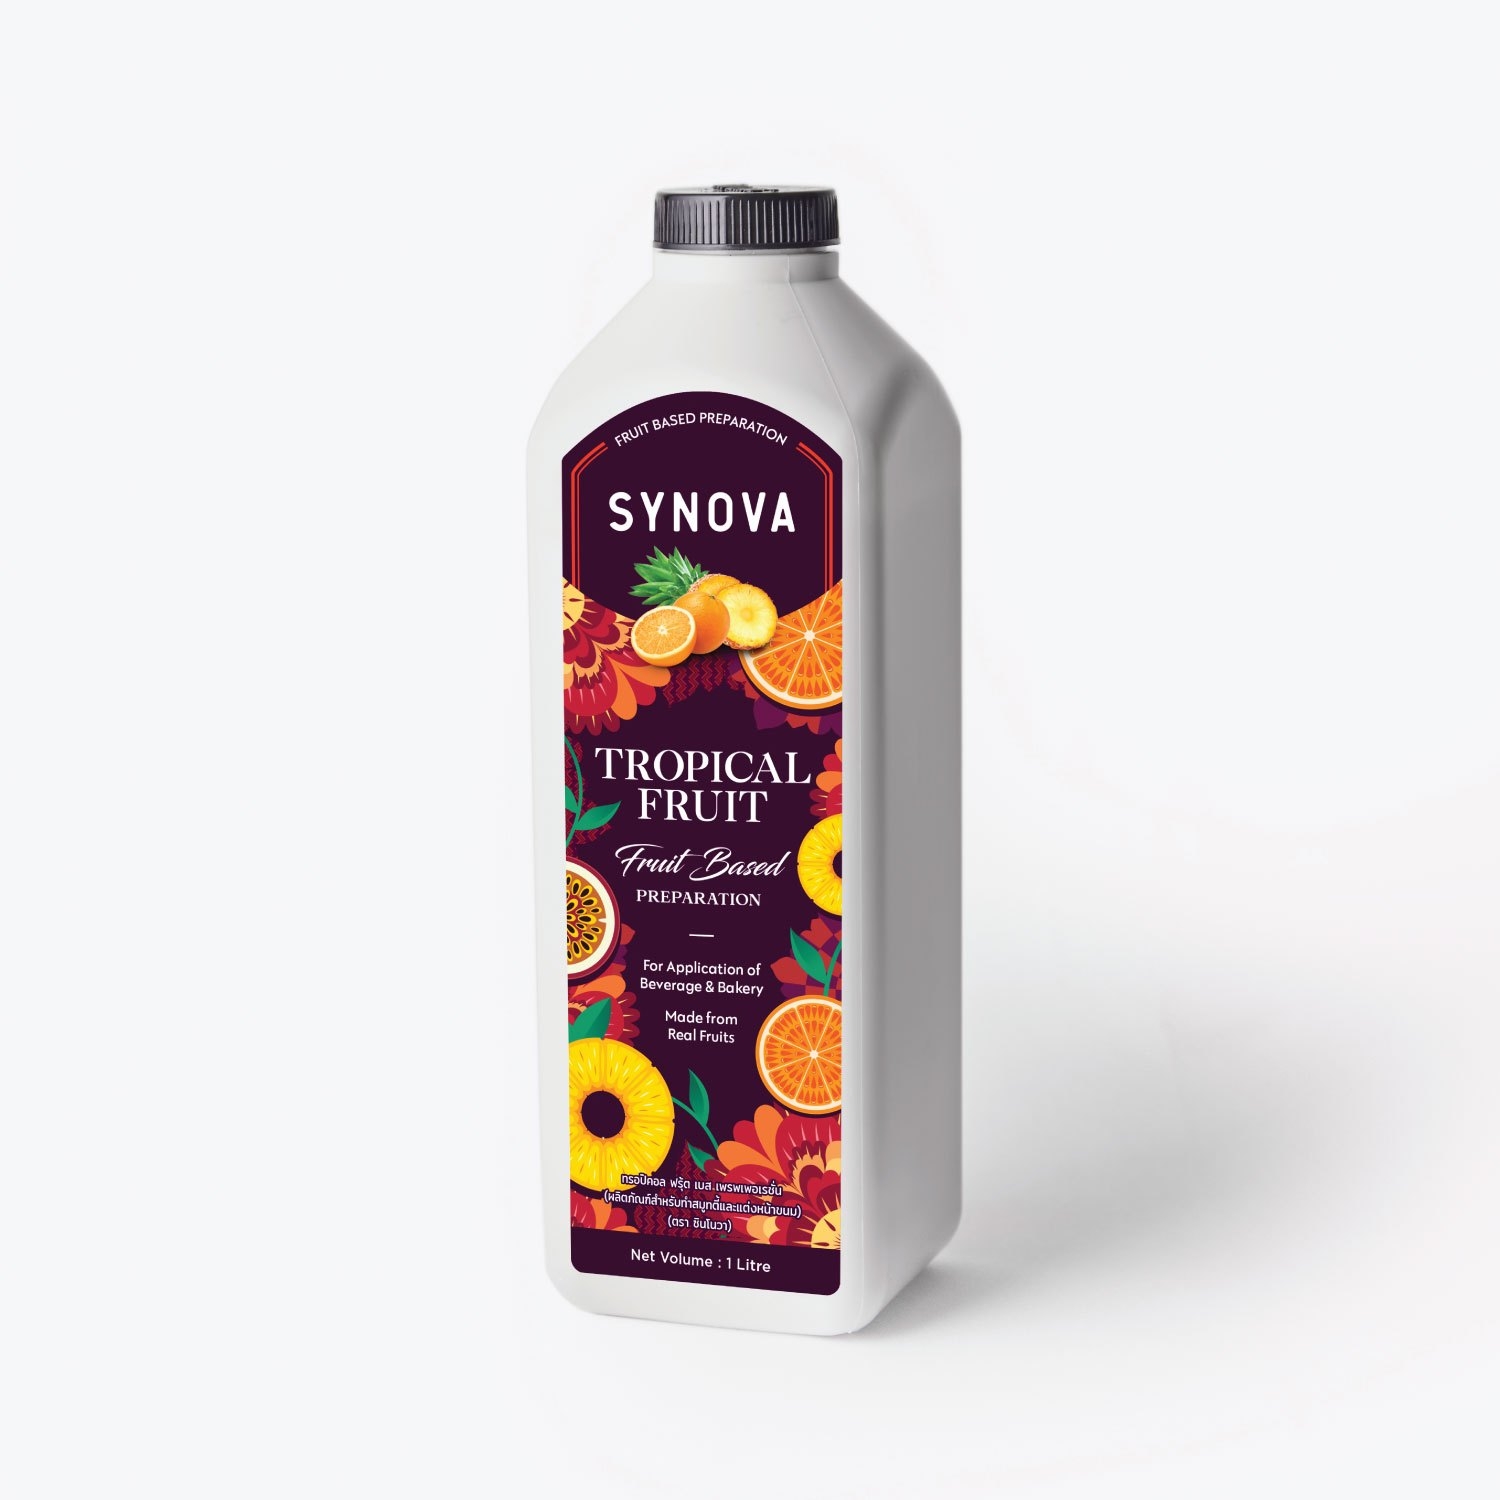 น้ำผลไม้เข้มข้น : SYNOVA ซอสทรอปปิคอลเข้มข้น (ยกกล่อง)